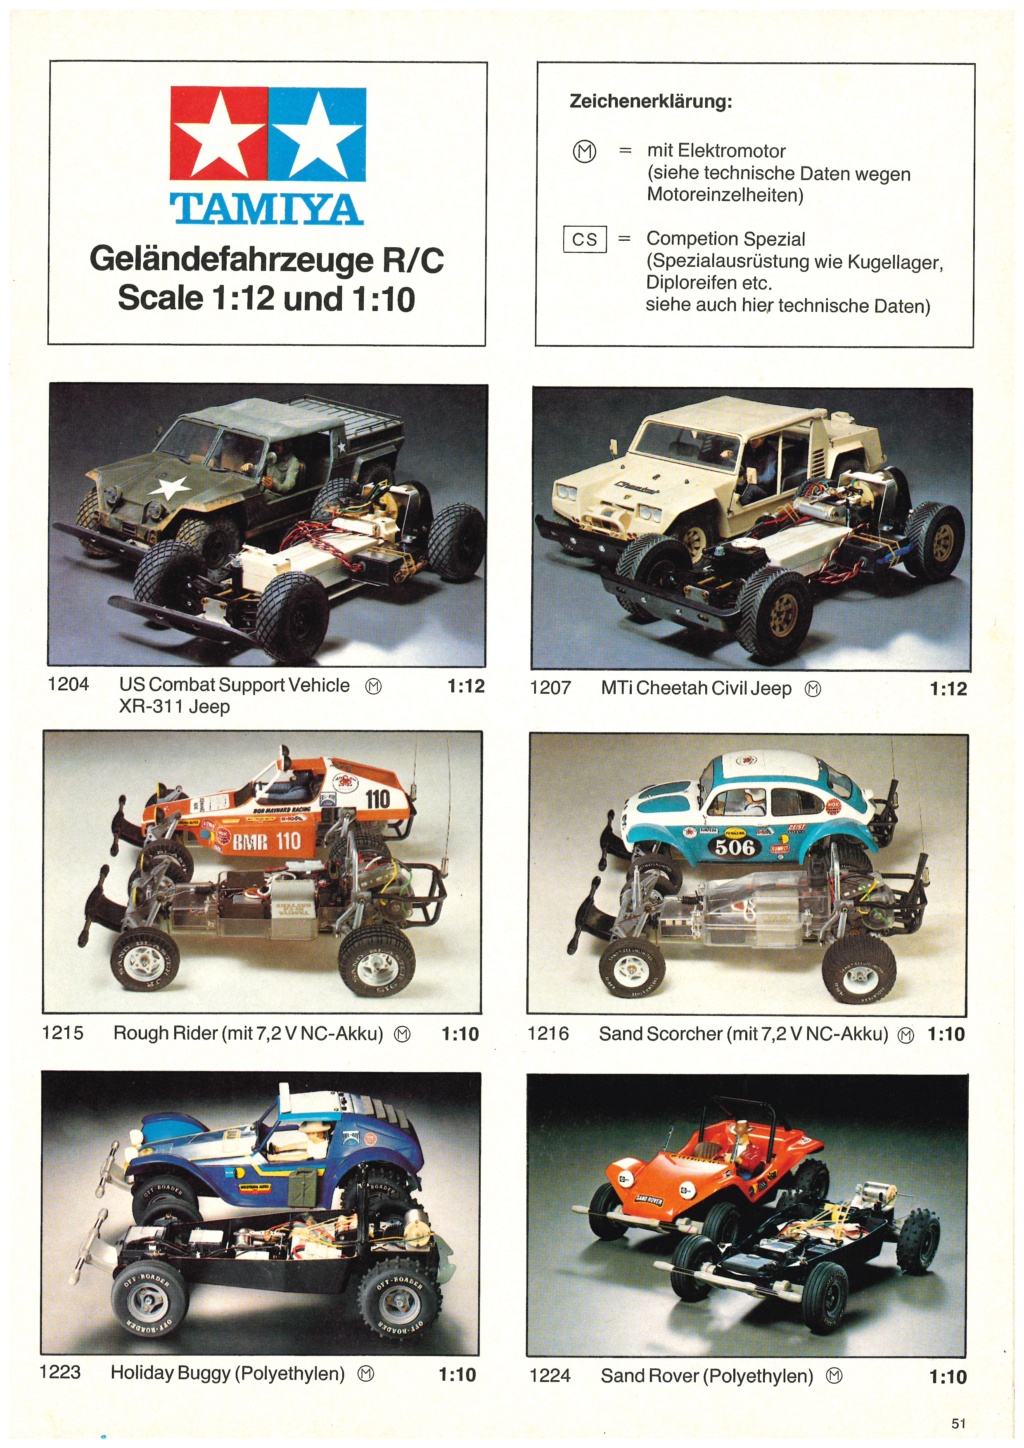 [TAMIYA HEINZ BEHRINGER 1982] Catalogue allemand importateur HEINZ BEHRINGER 1982 Tami3311